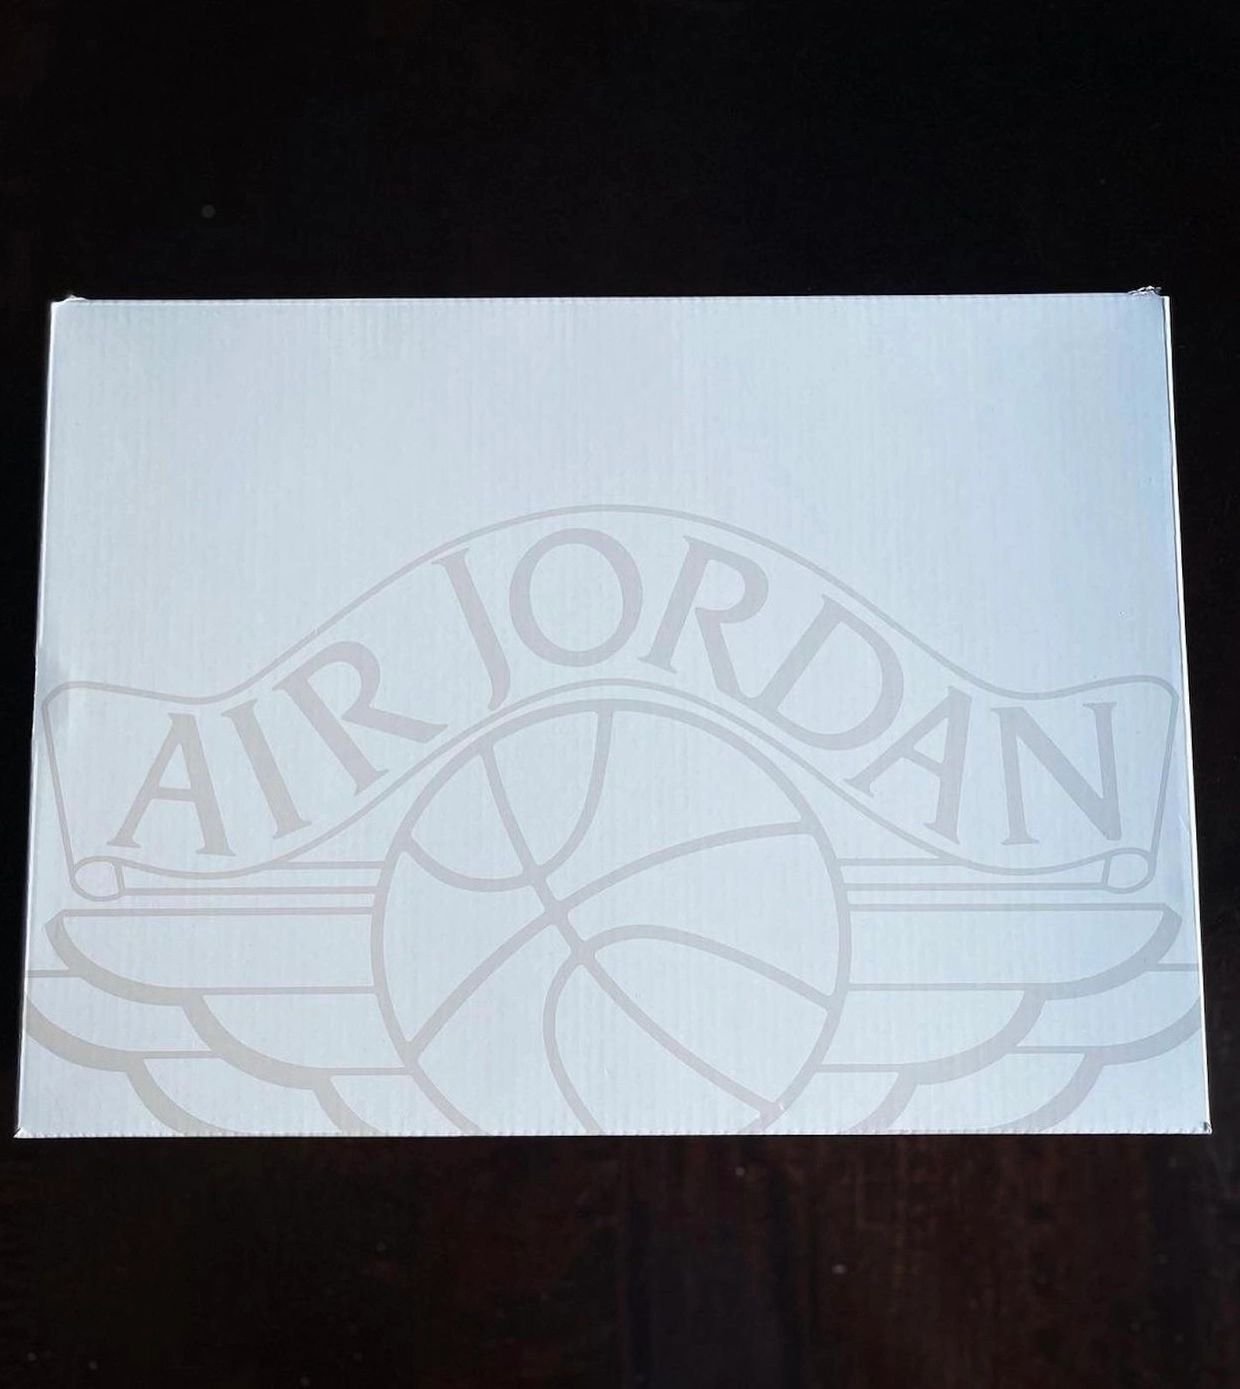 Air Jordan 2 OG Chicago 2022 DX2454-106 Release Details